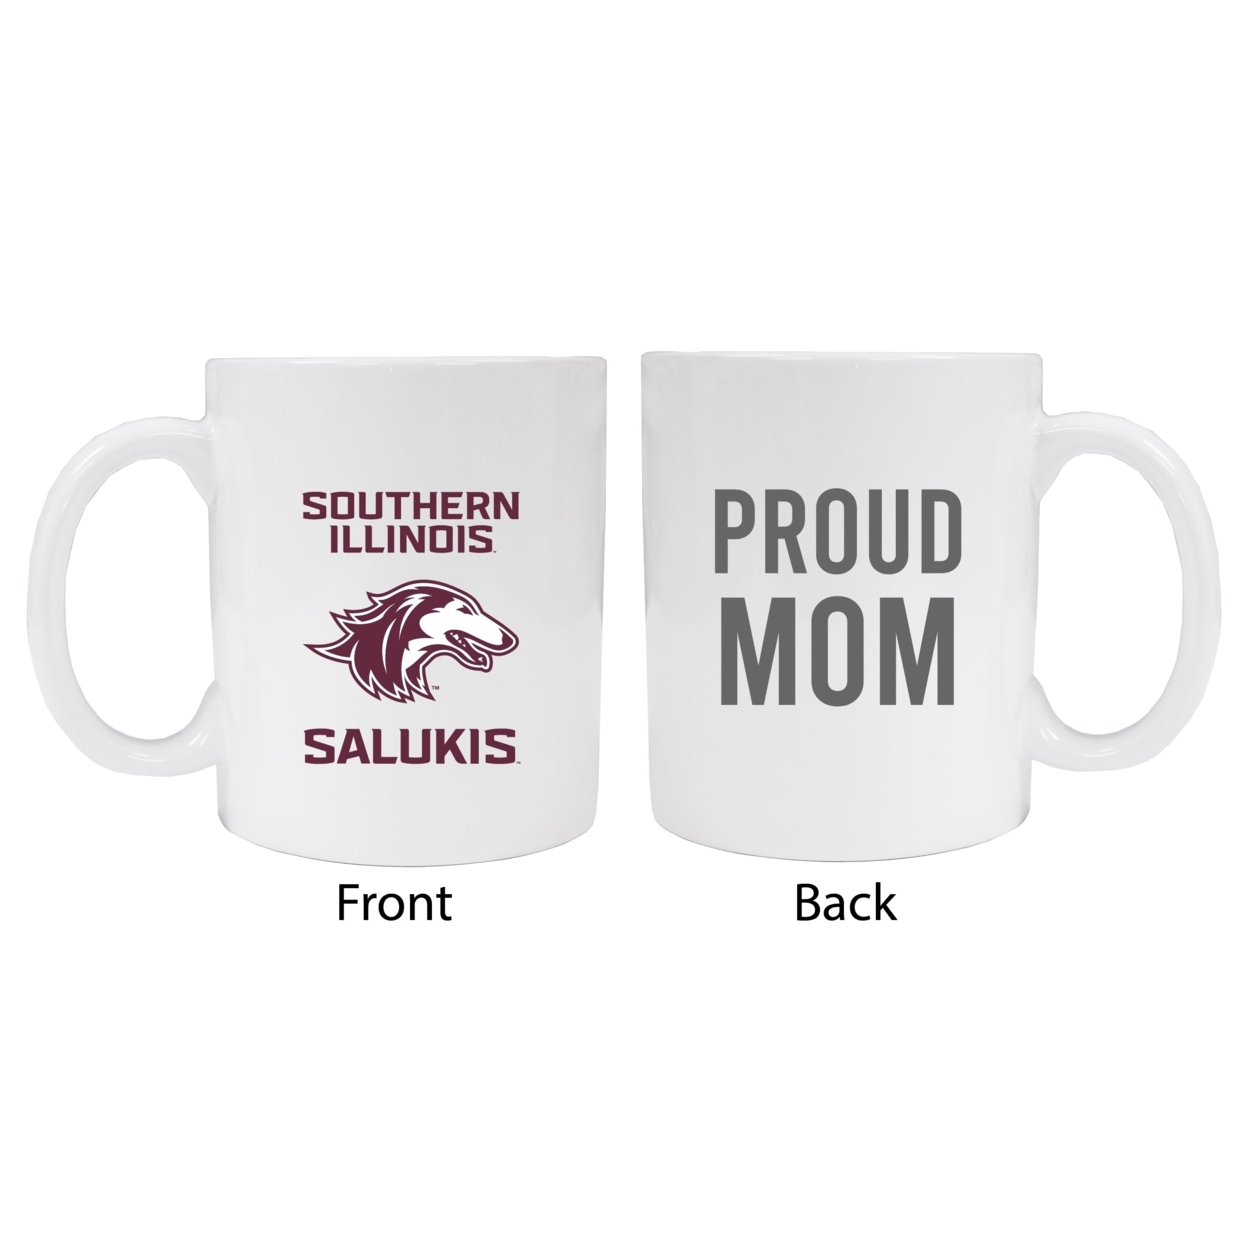 Southern Illinois Salukis Proud Mom Ceramic Coffee Mug - White